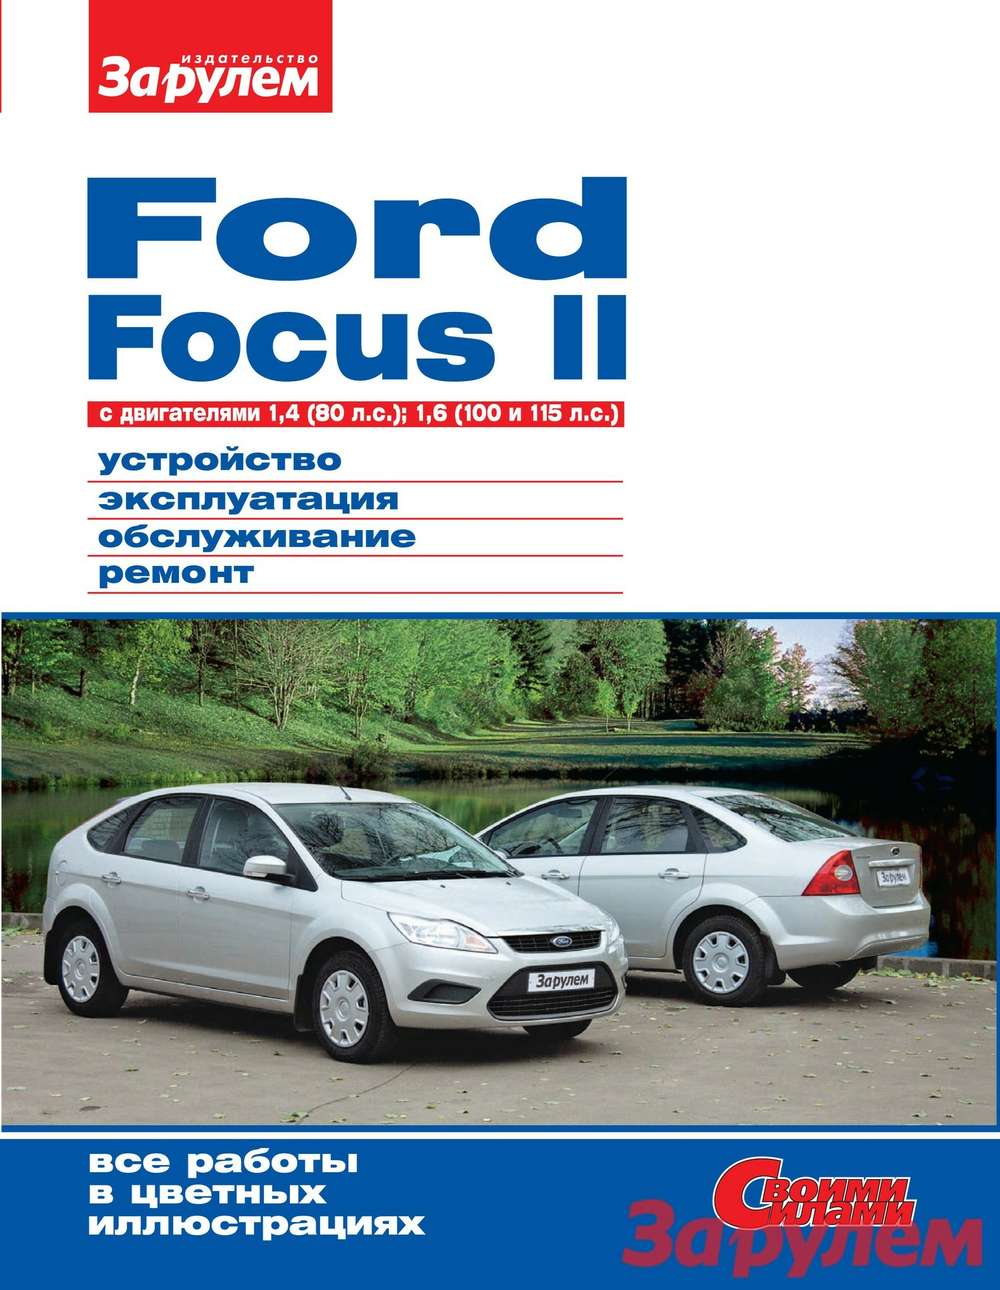 Focus II: перед дальней дорогой